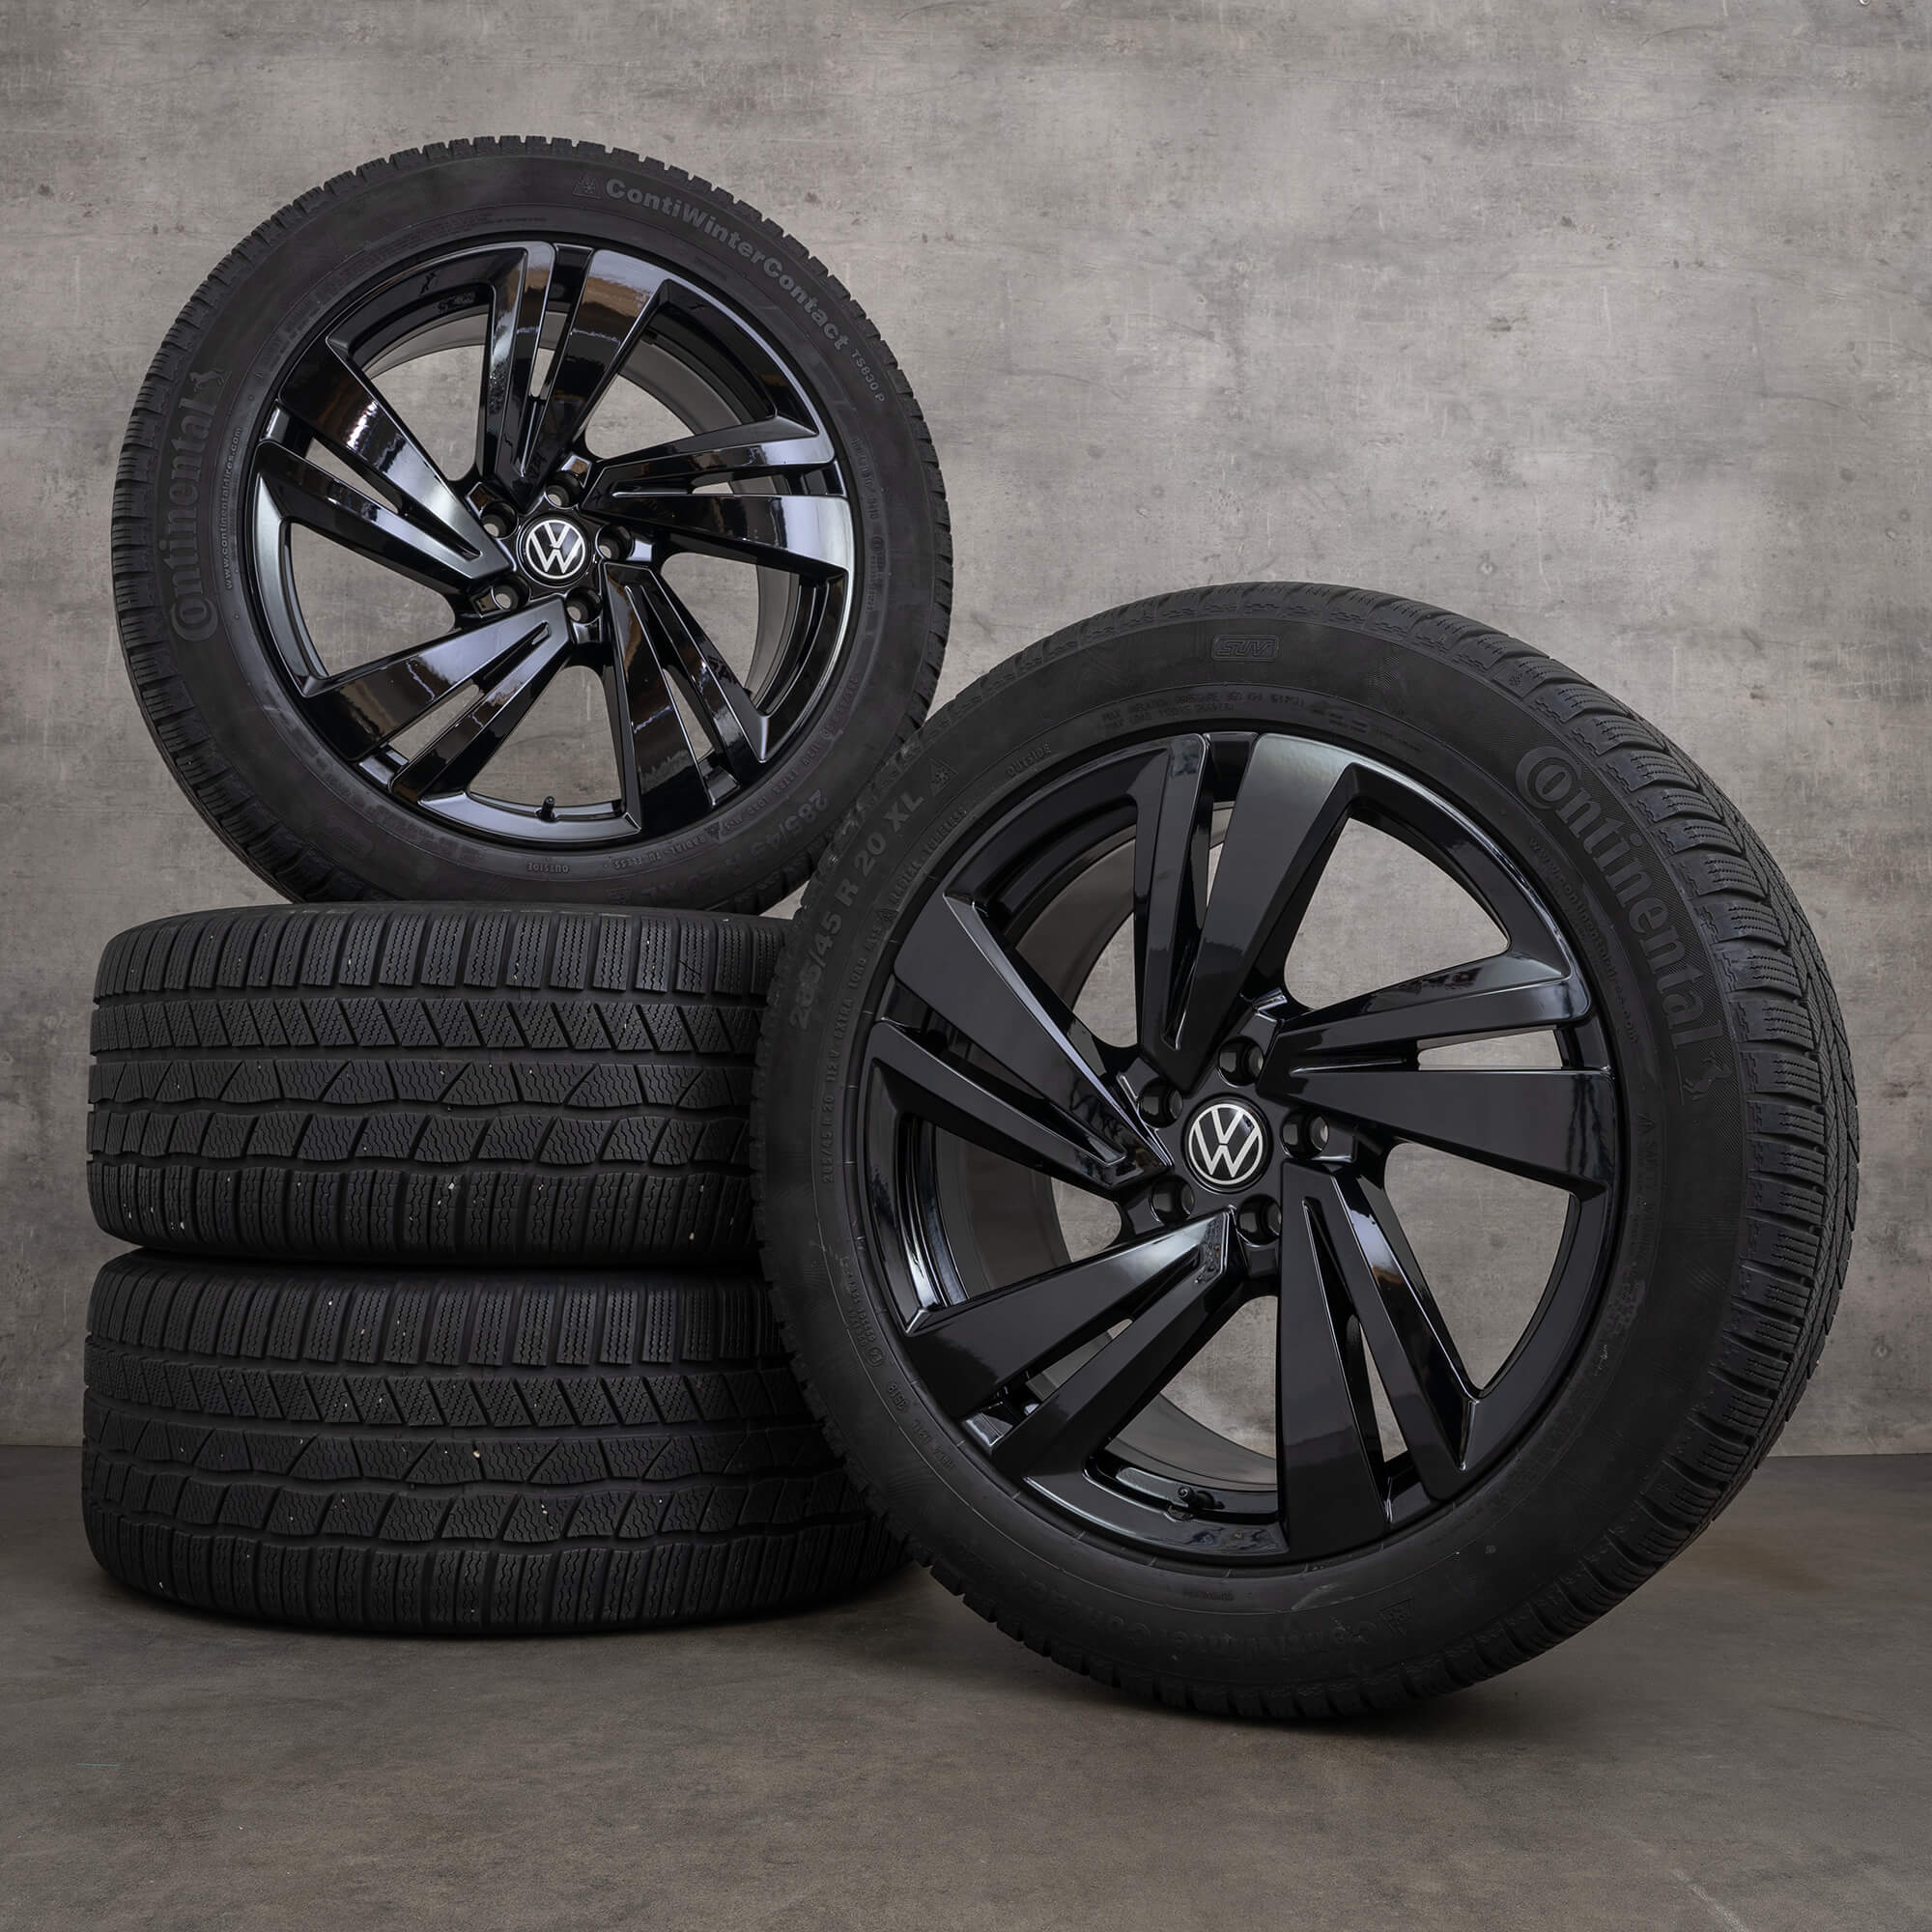 Rodas de inverno VW Touareg III CR, pneus inverno, jantes 20 polegadas Nevada